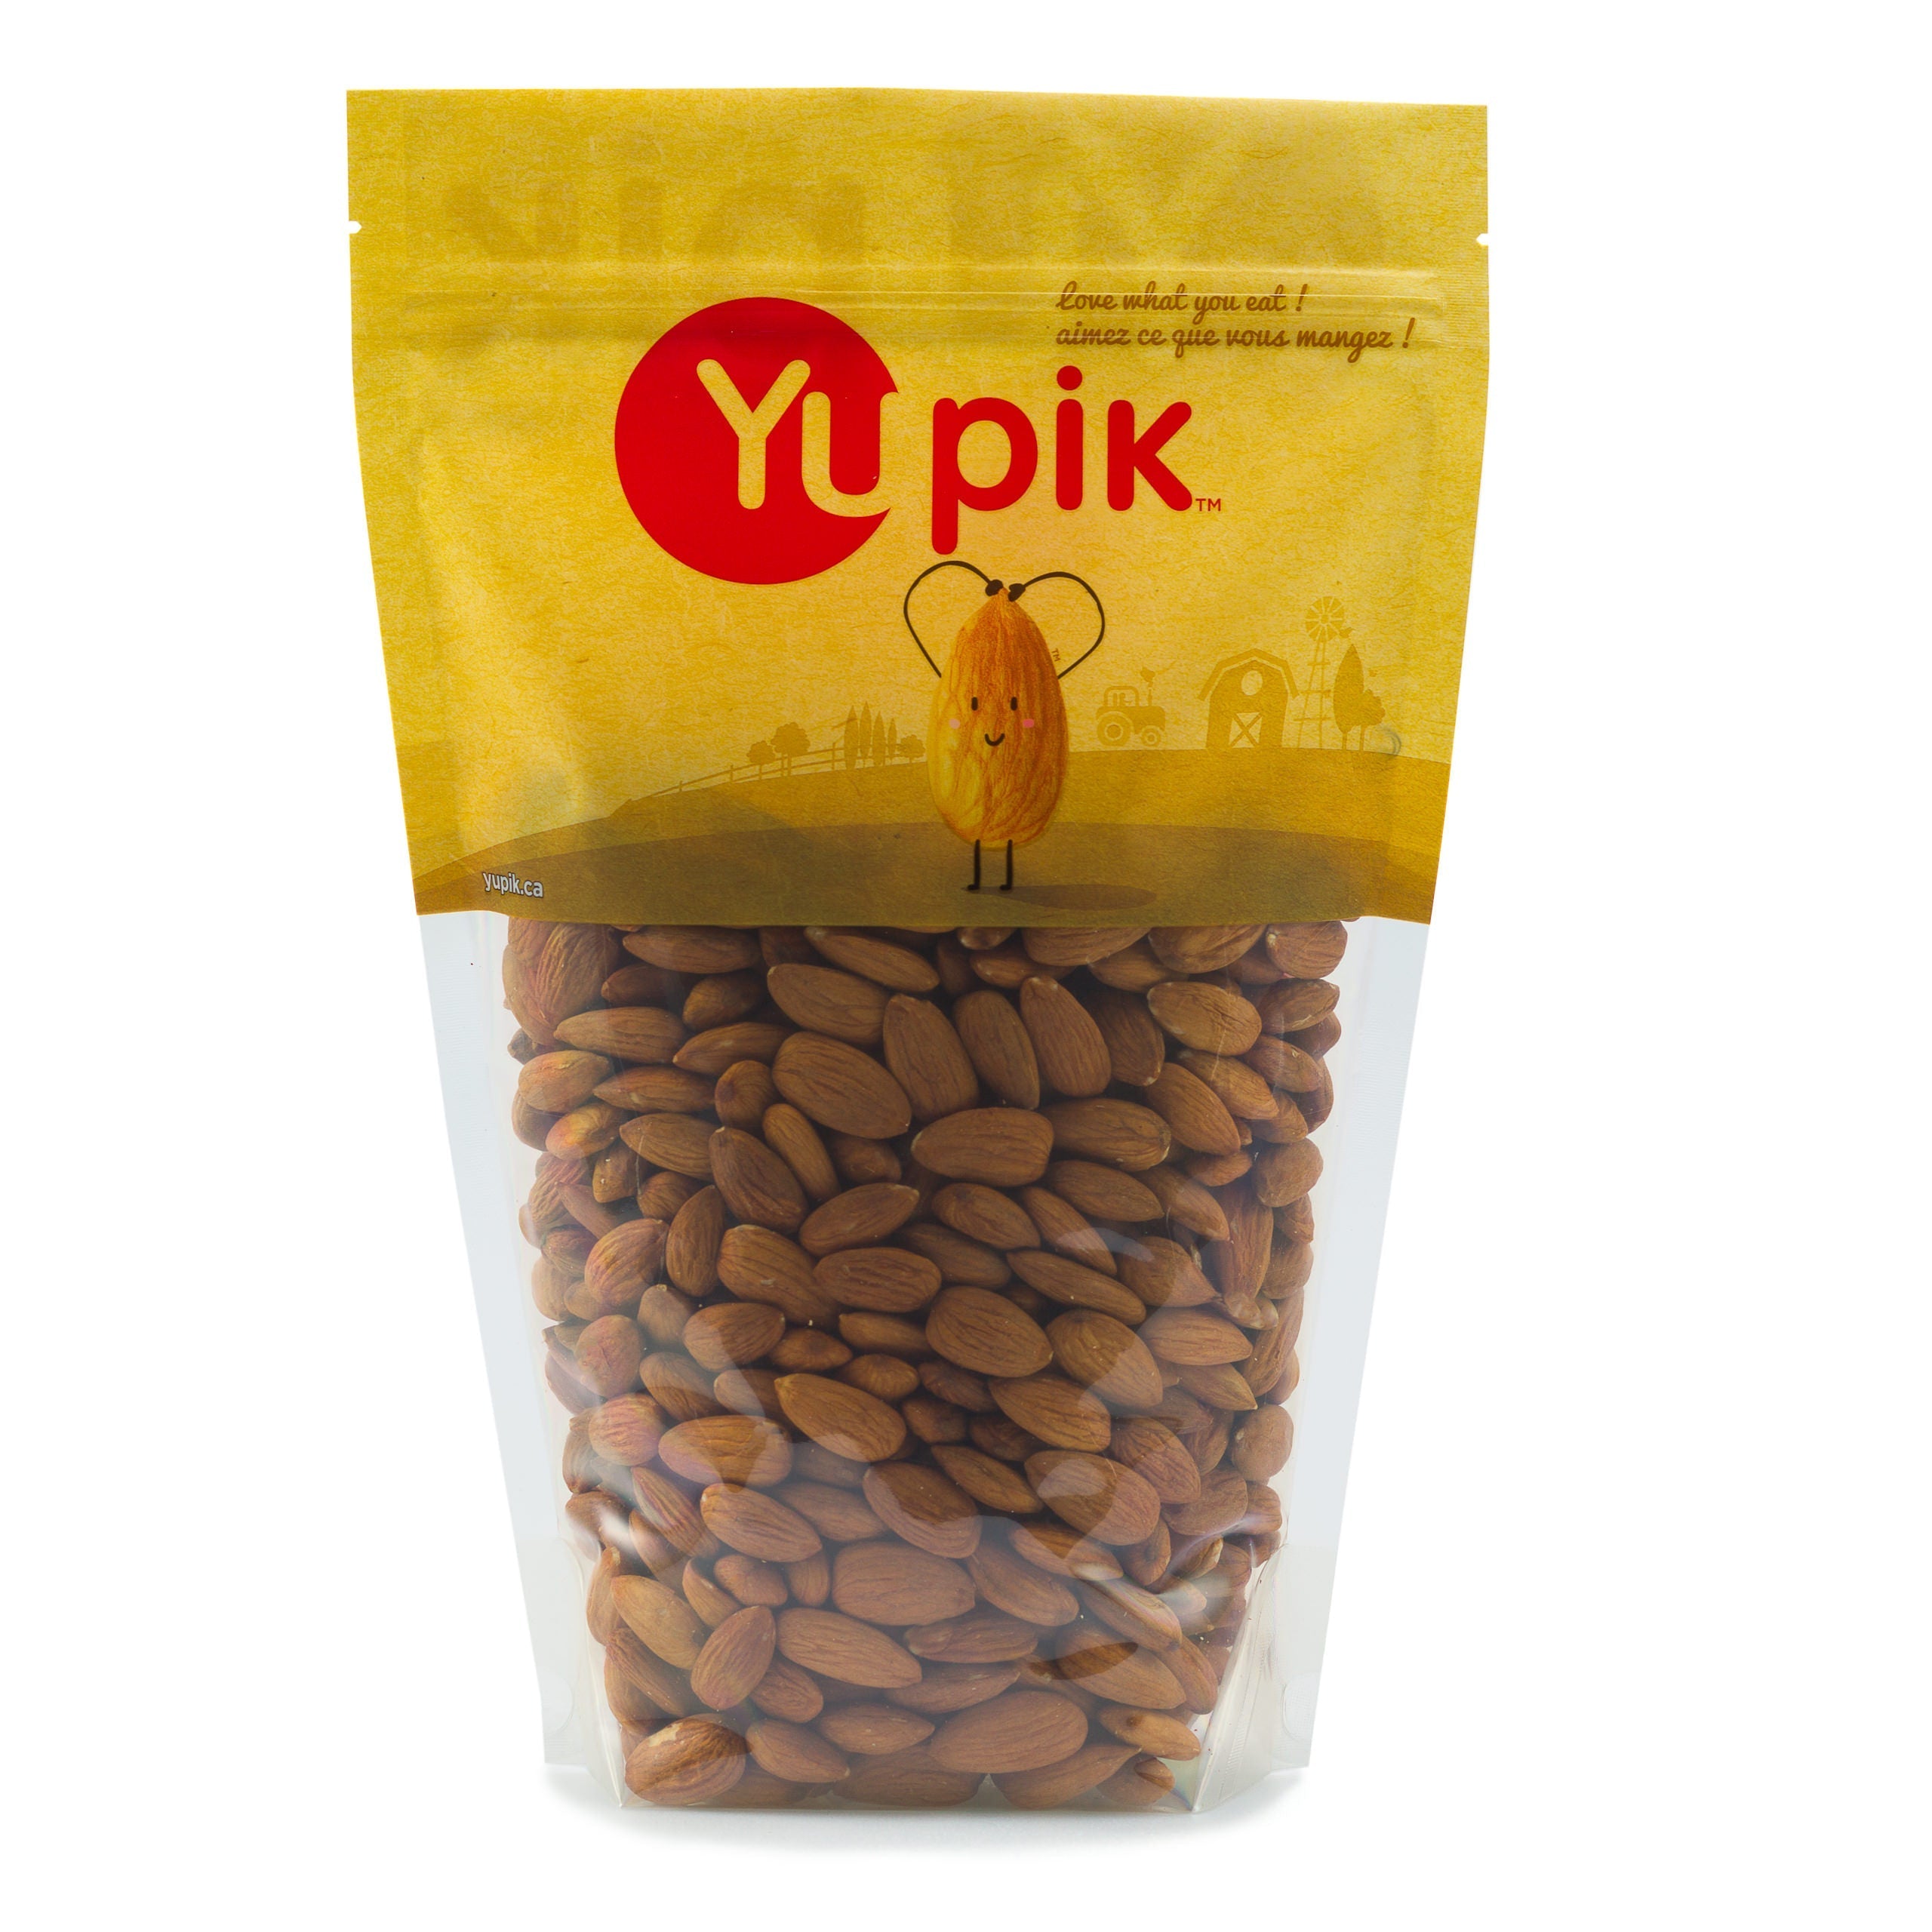 Yupik Natural Almonds 1kg image